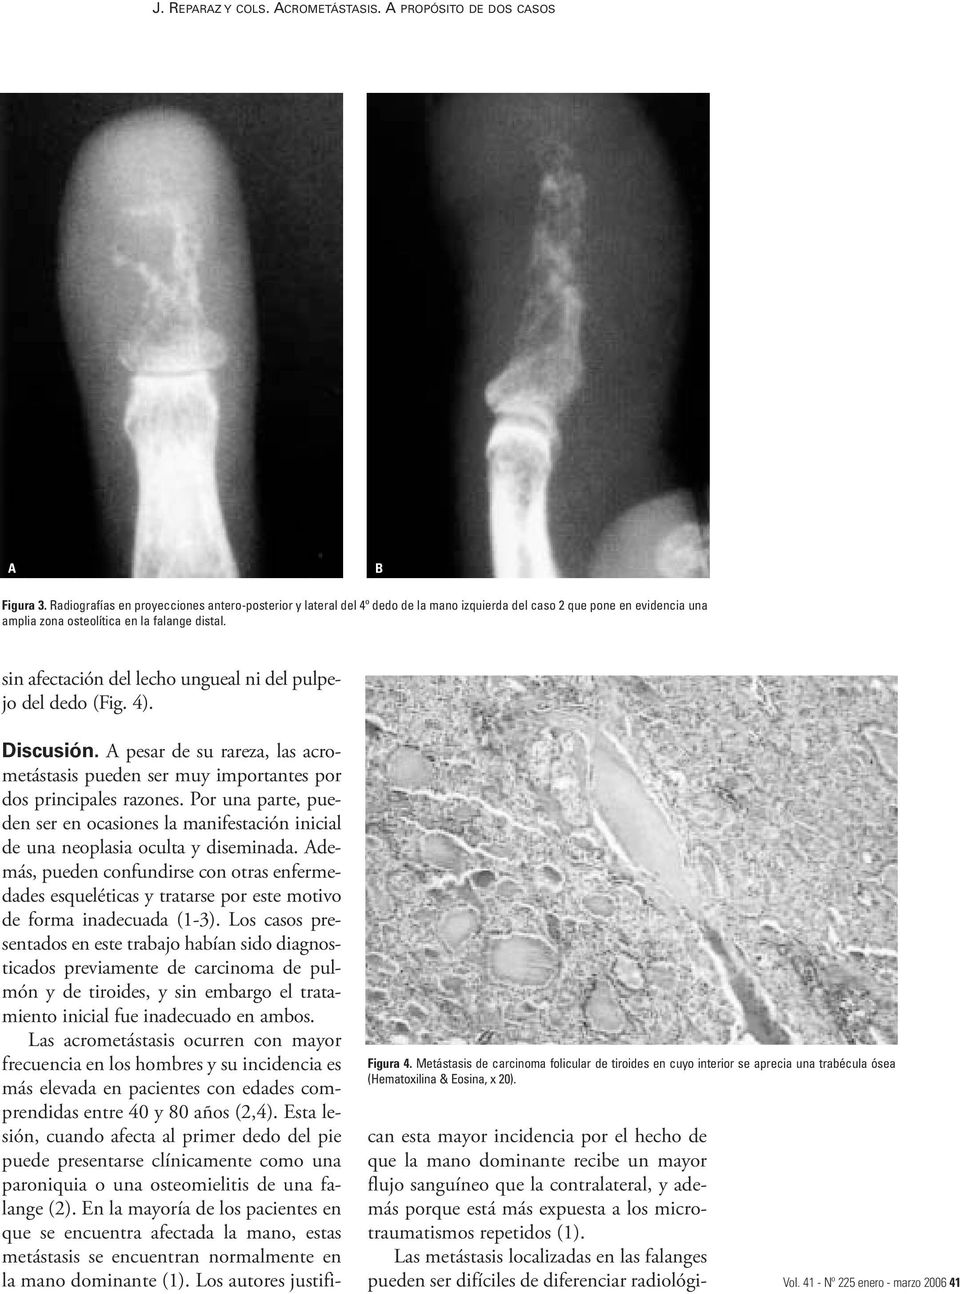 sin afectación del lecho ungueal ni del pulpejo del dedo (Fig. 4). Figura 4. Metástasis de carcinoma folicular de tiroides en cuyo interior se aprecia una trabécula ósea (Hematoxilina & Eosina, x 20).